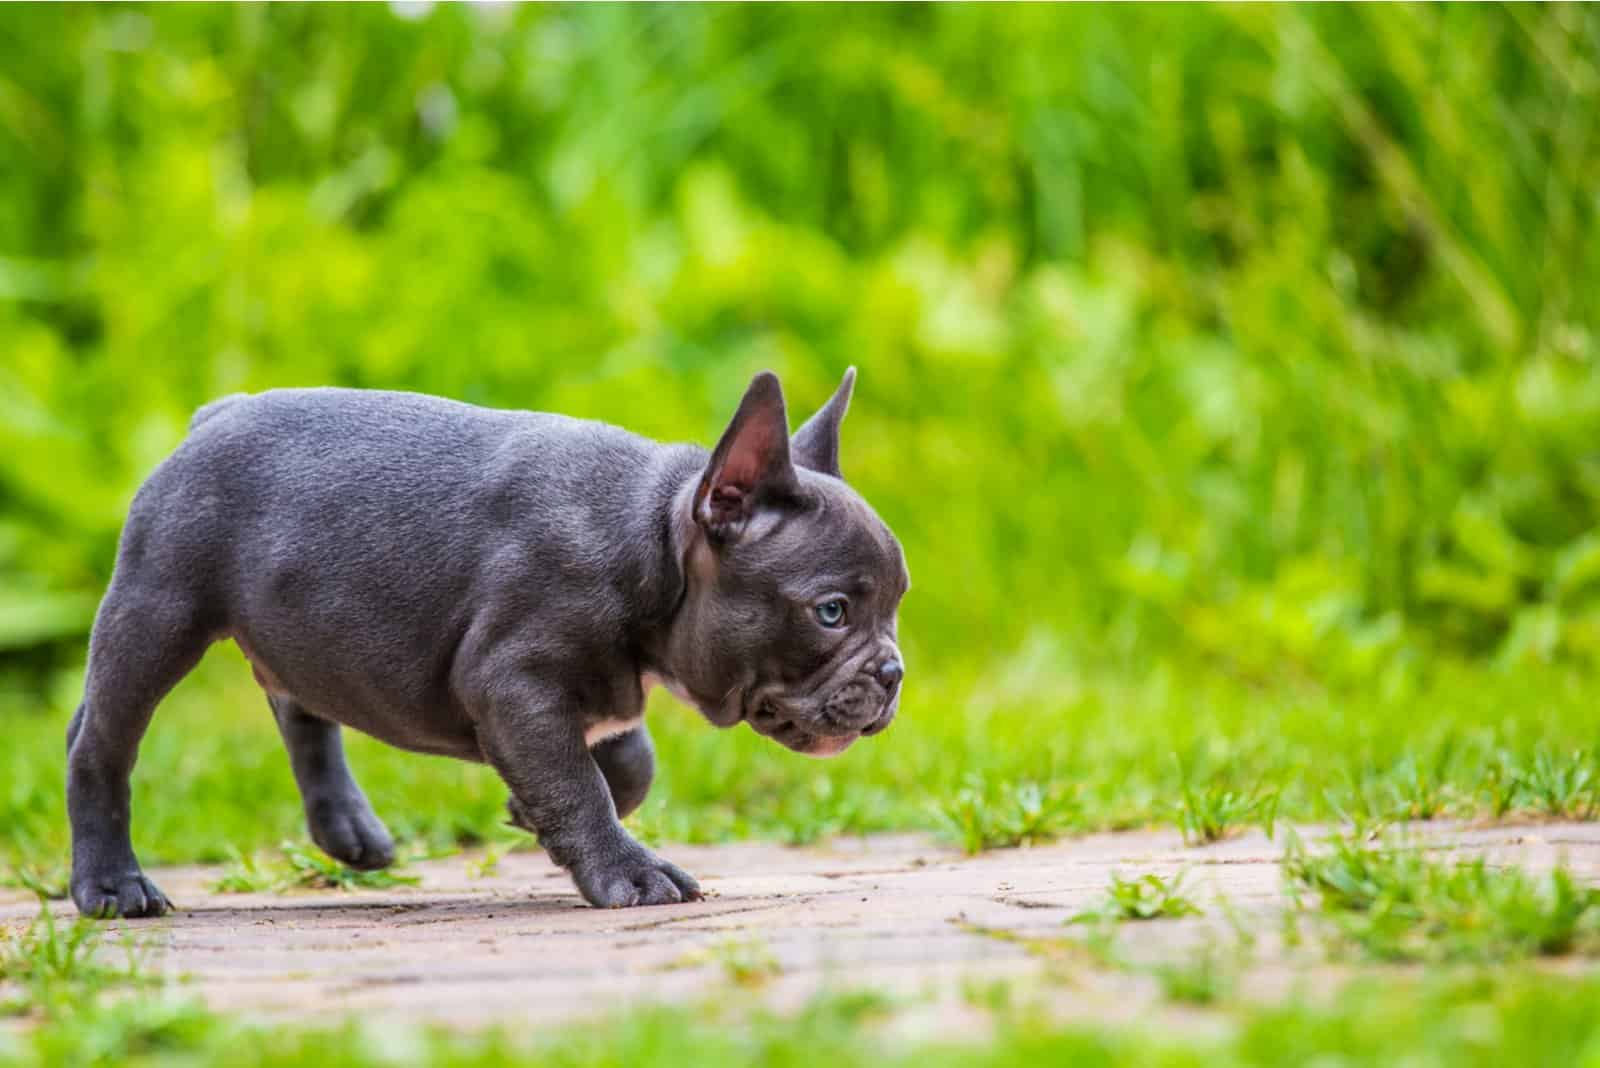 a French Bulldog puppy walks